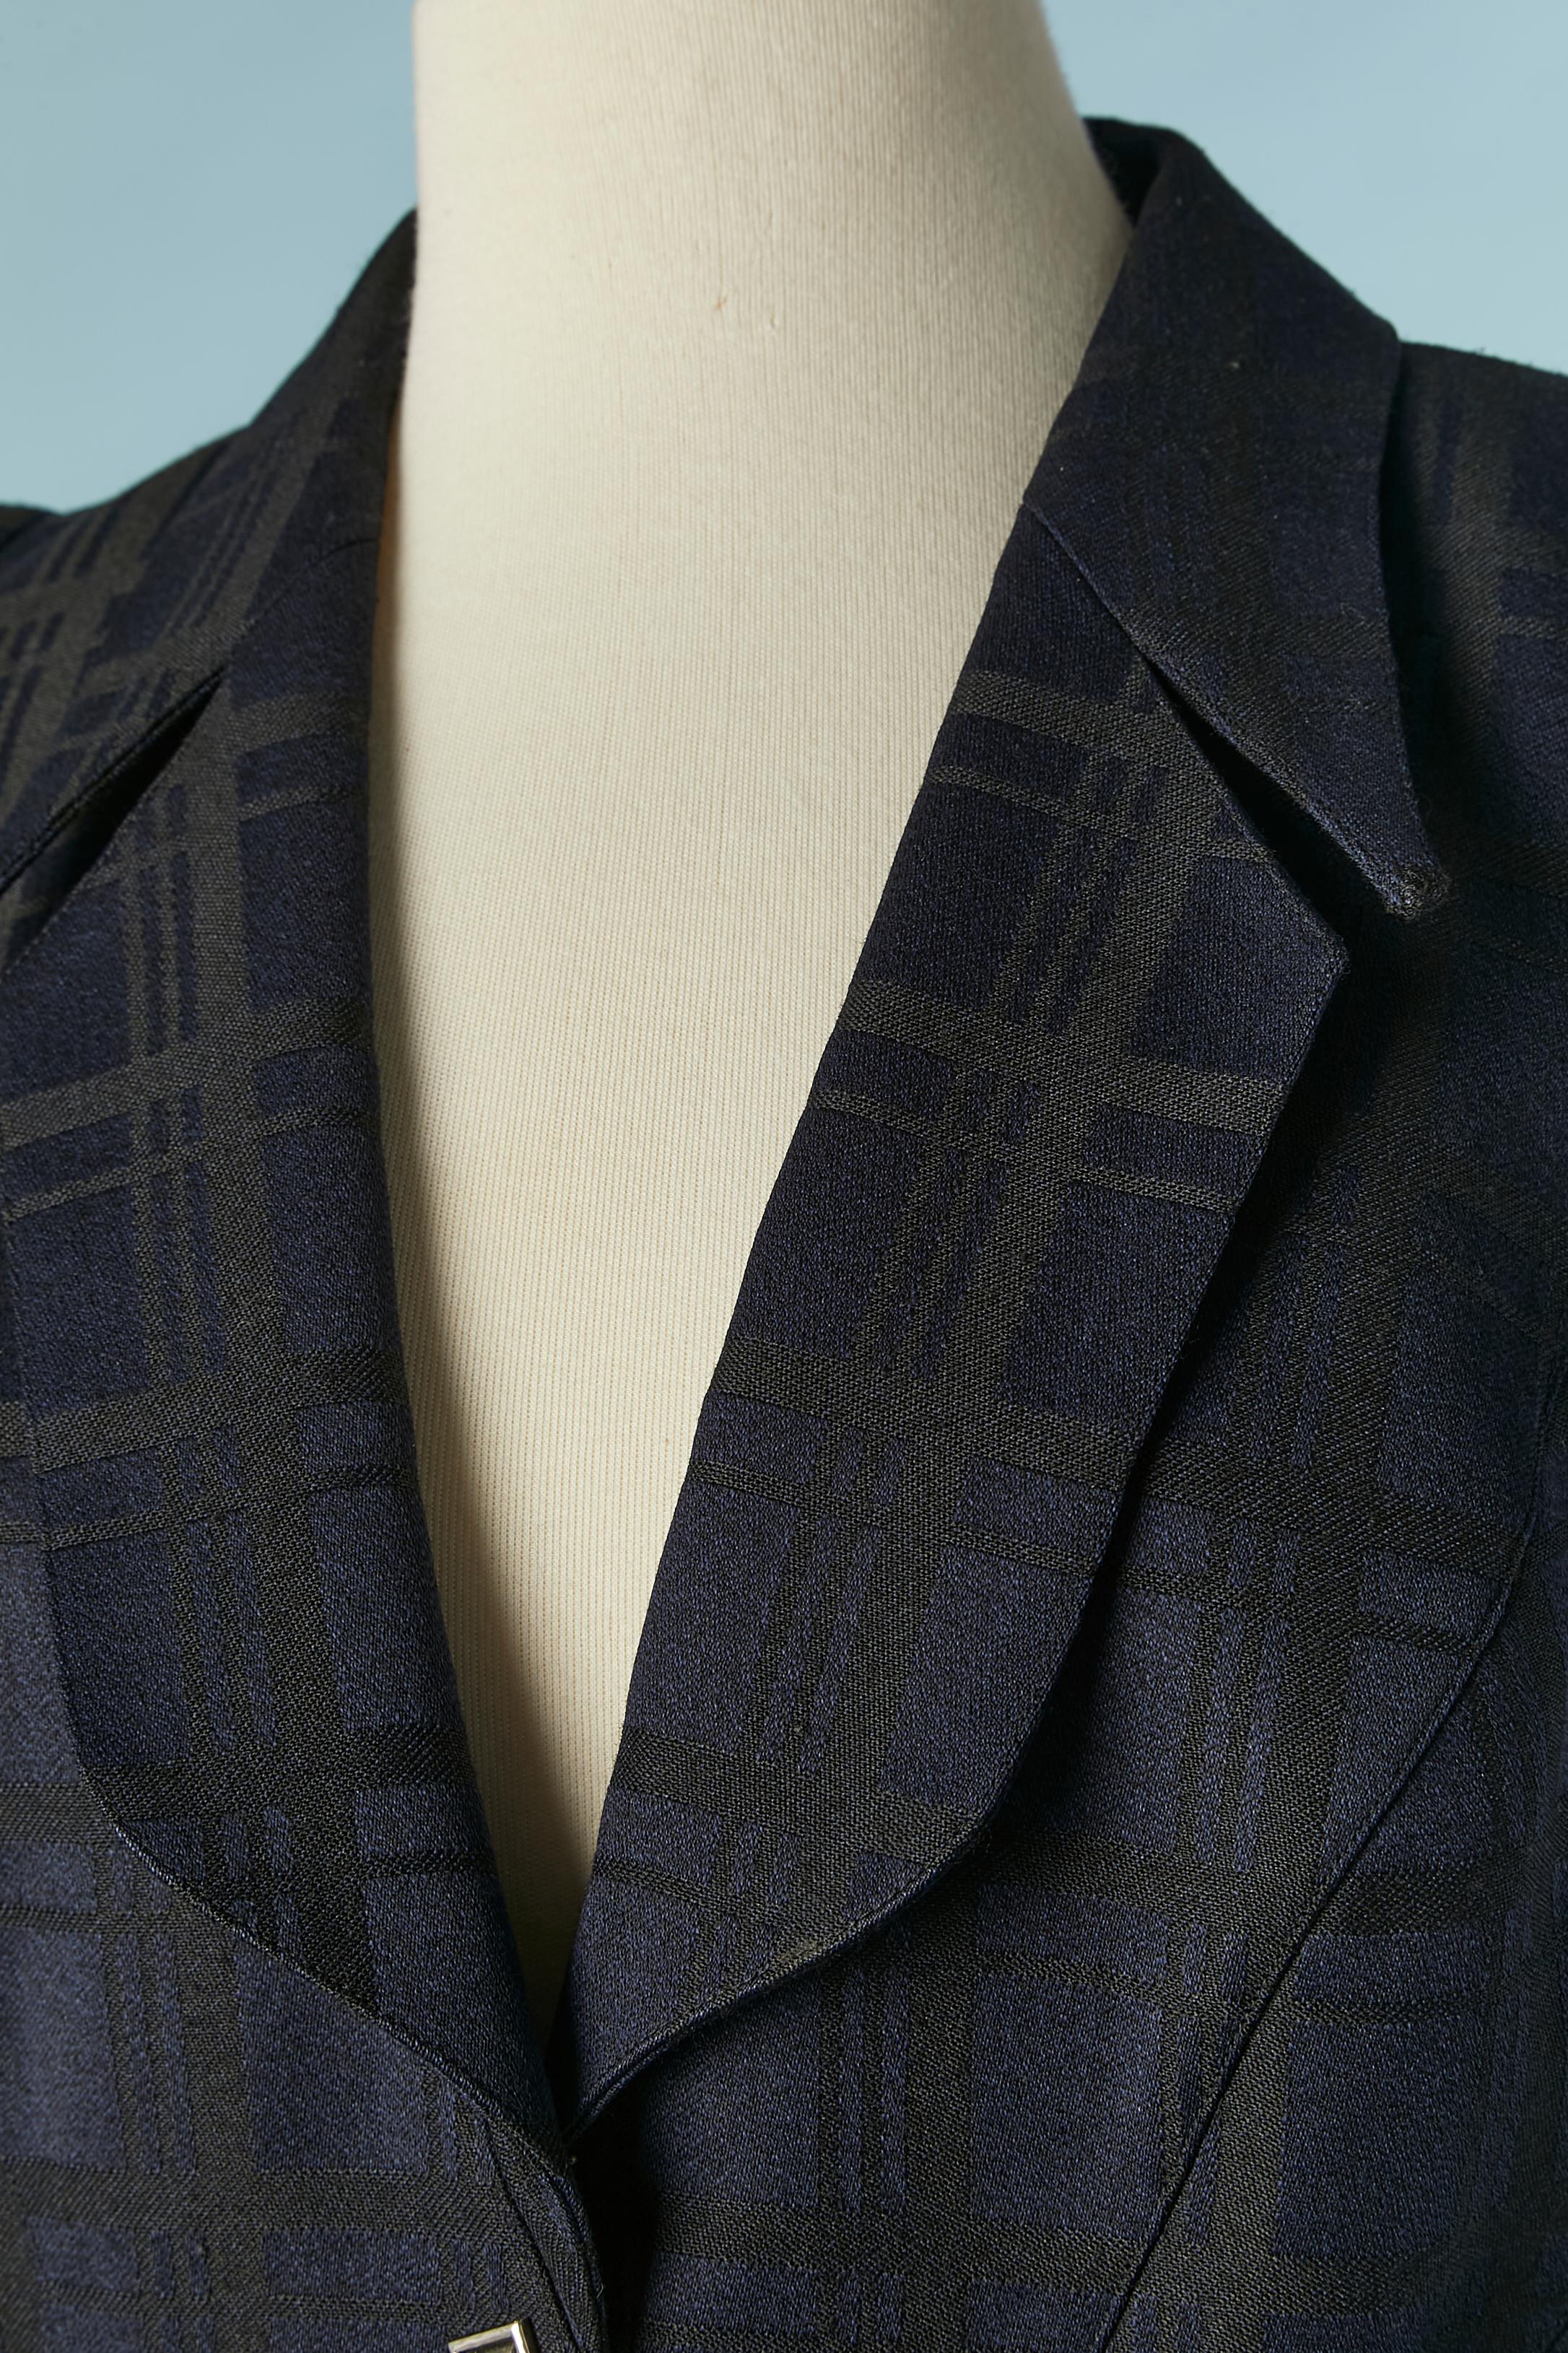 Combinaison jupe en jacquard à carreaux bleu marine et noir. Tissu principal : 100% laine. Doublure : 100% acétate. Pad d'épaule.
TAILLE 38 (Fr) M 